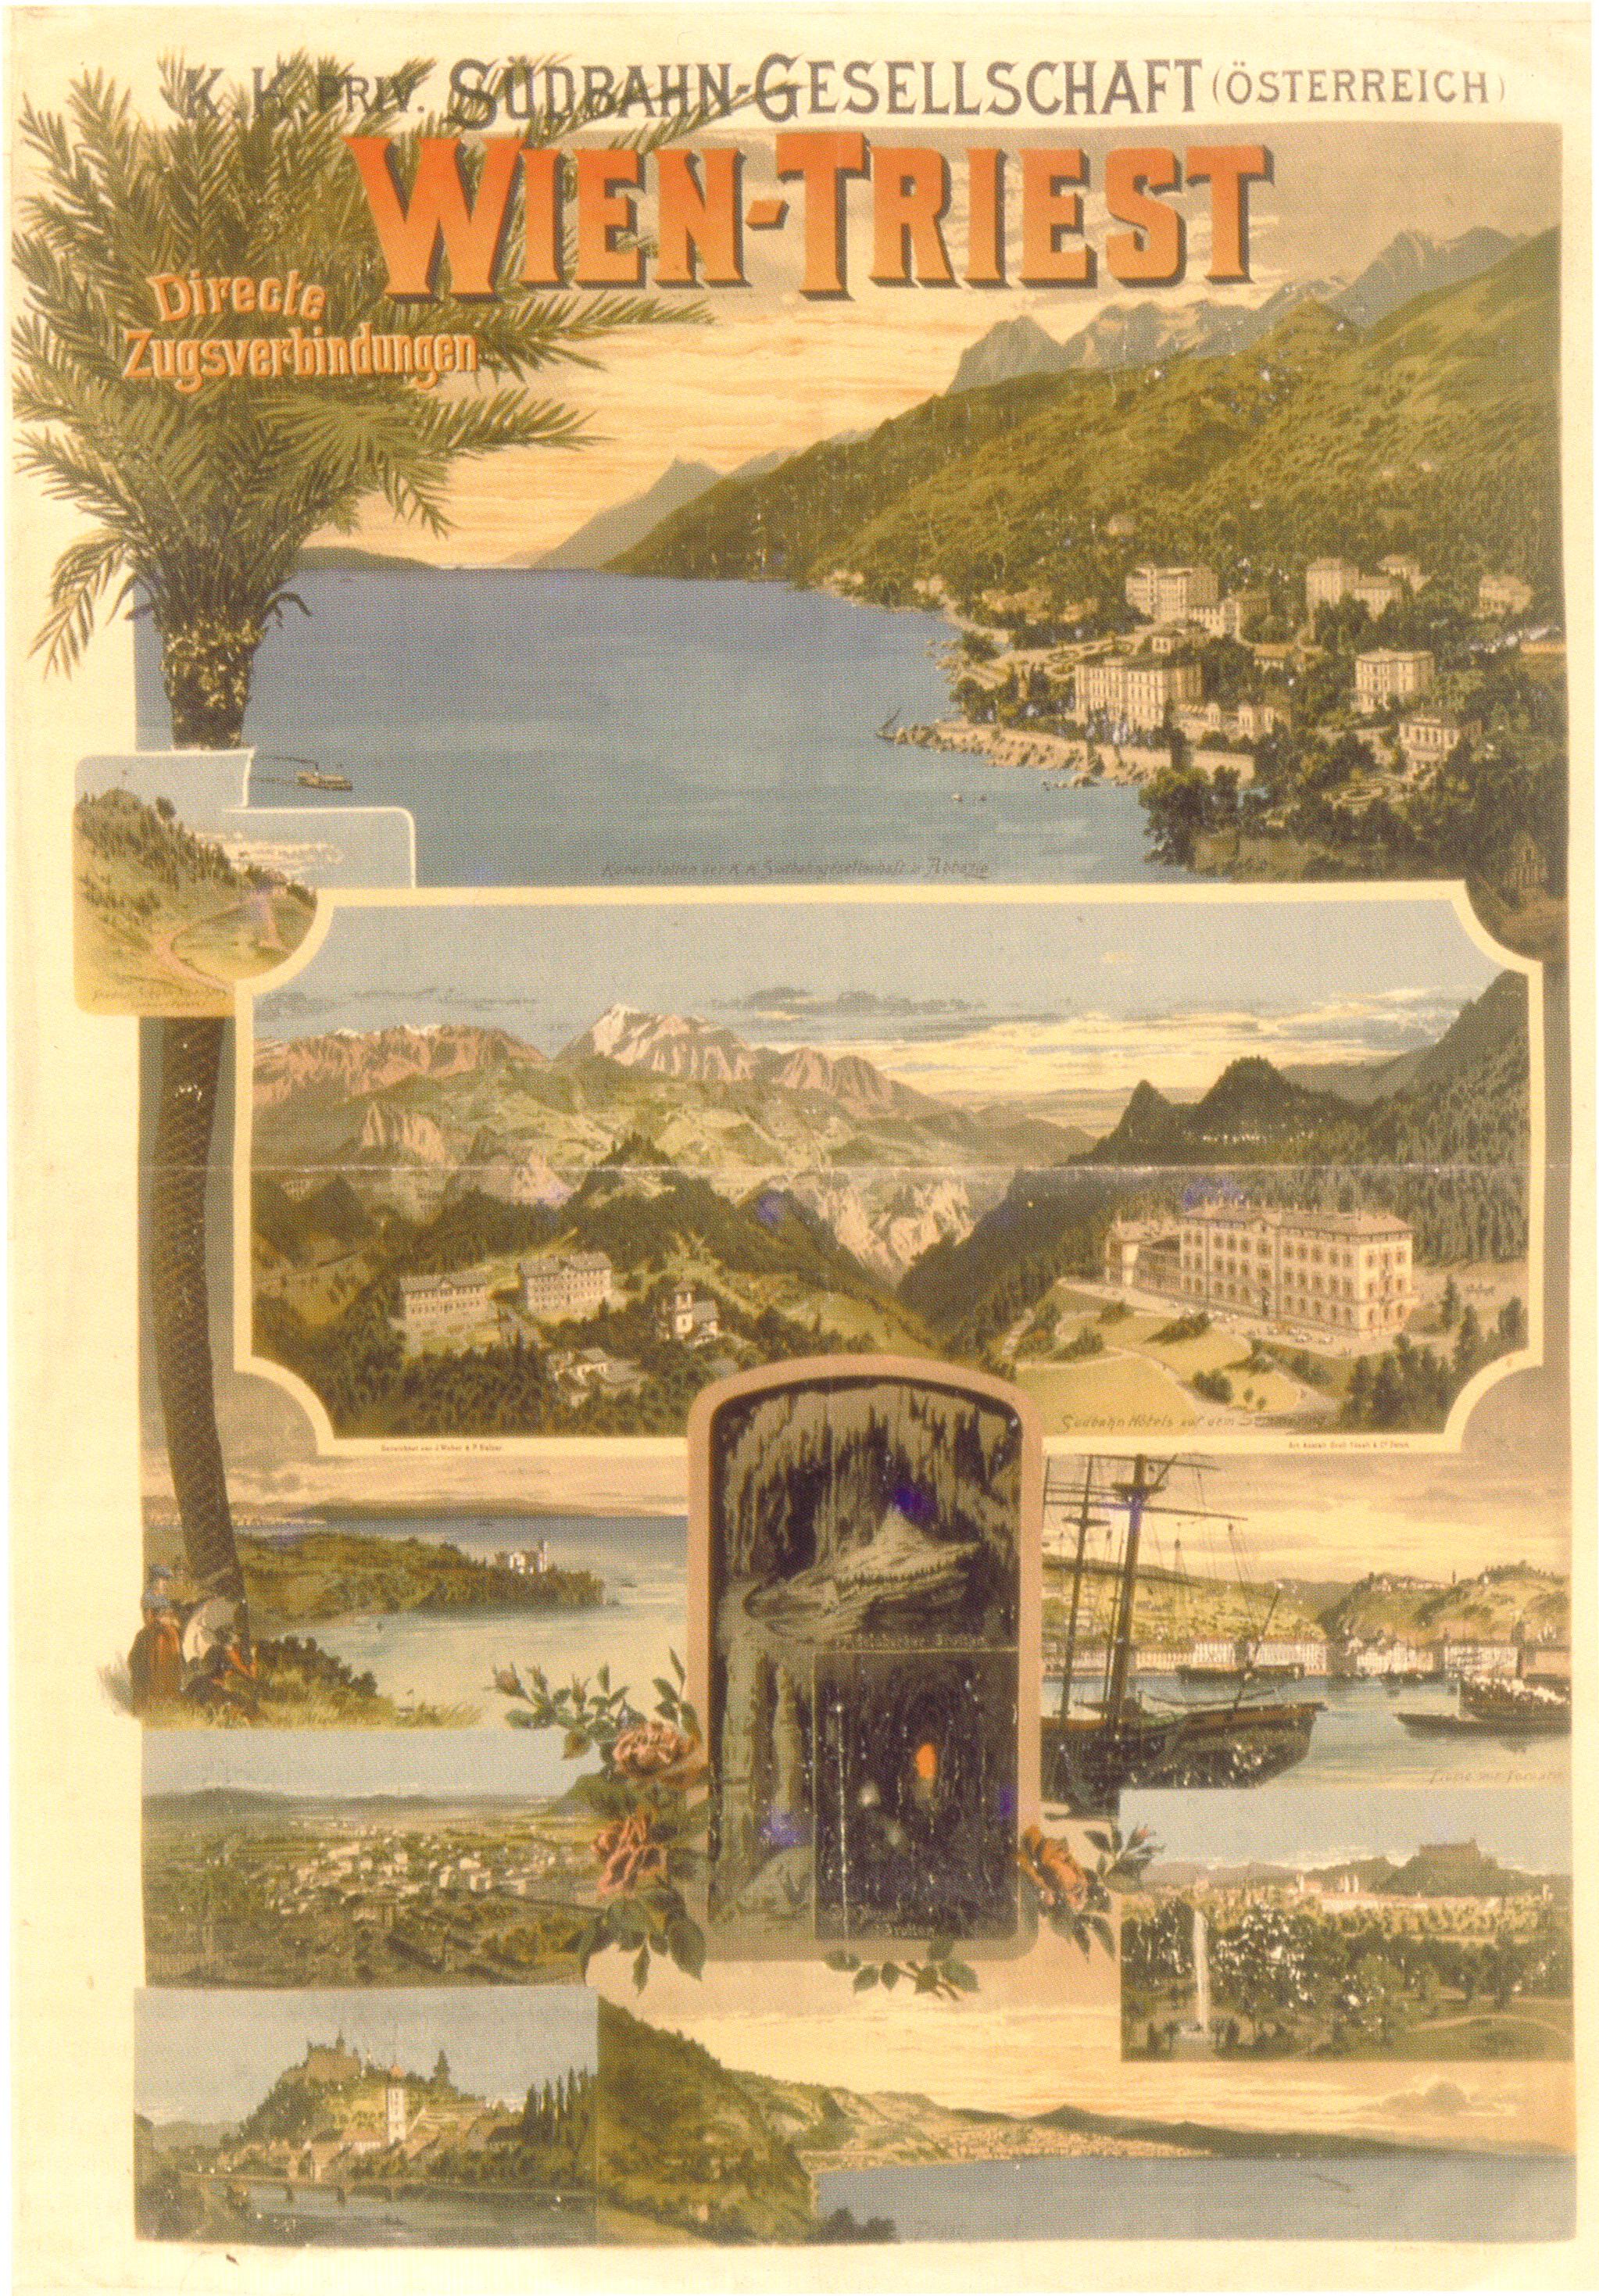 plakat_suedbahngesellschaft_1898.jpg